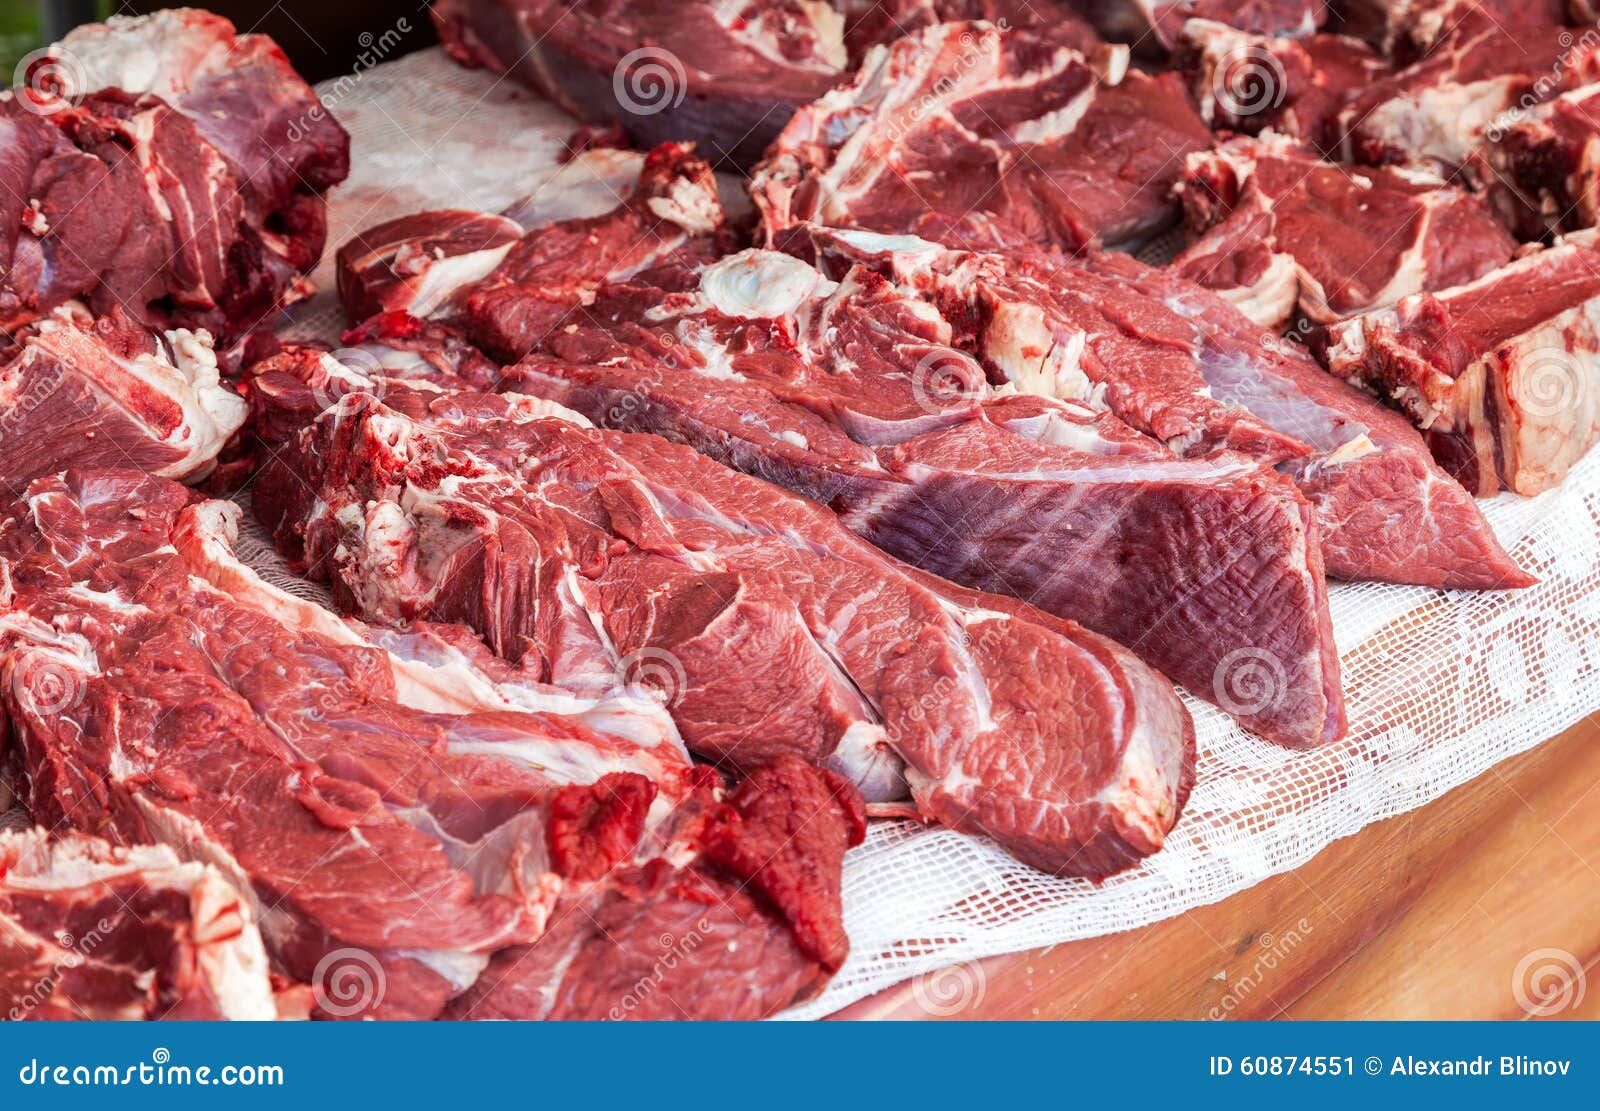 Мясо говядина халяль. Мясо говядина. Парное мясо говядины.